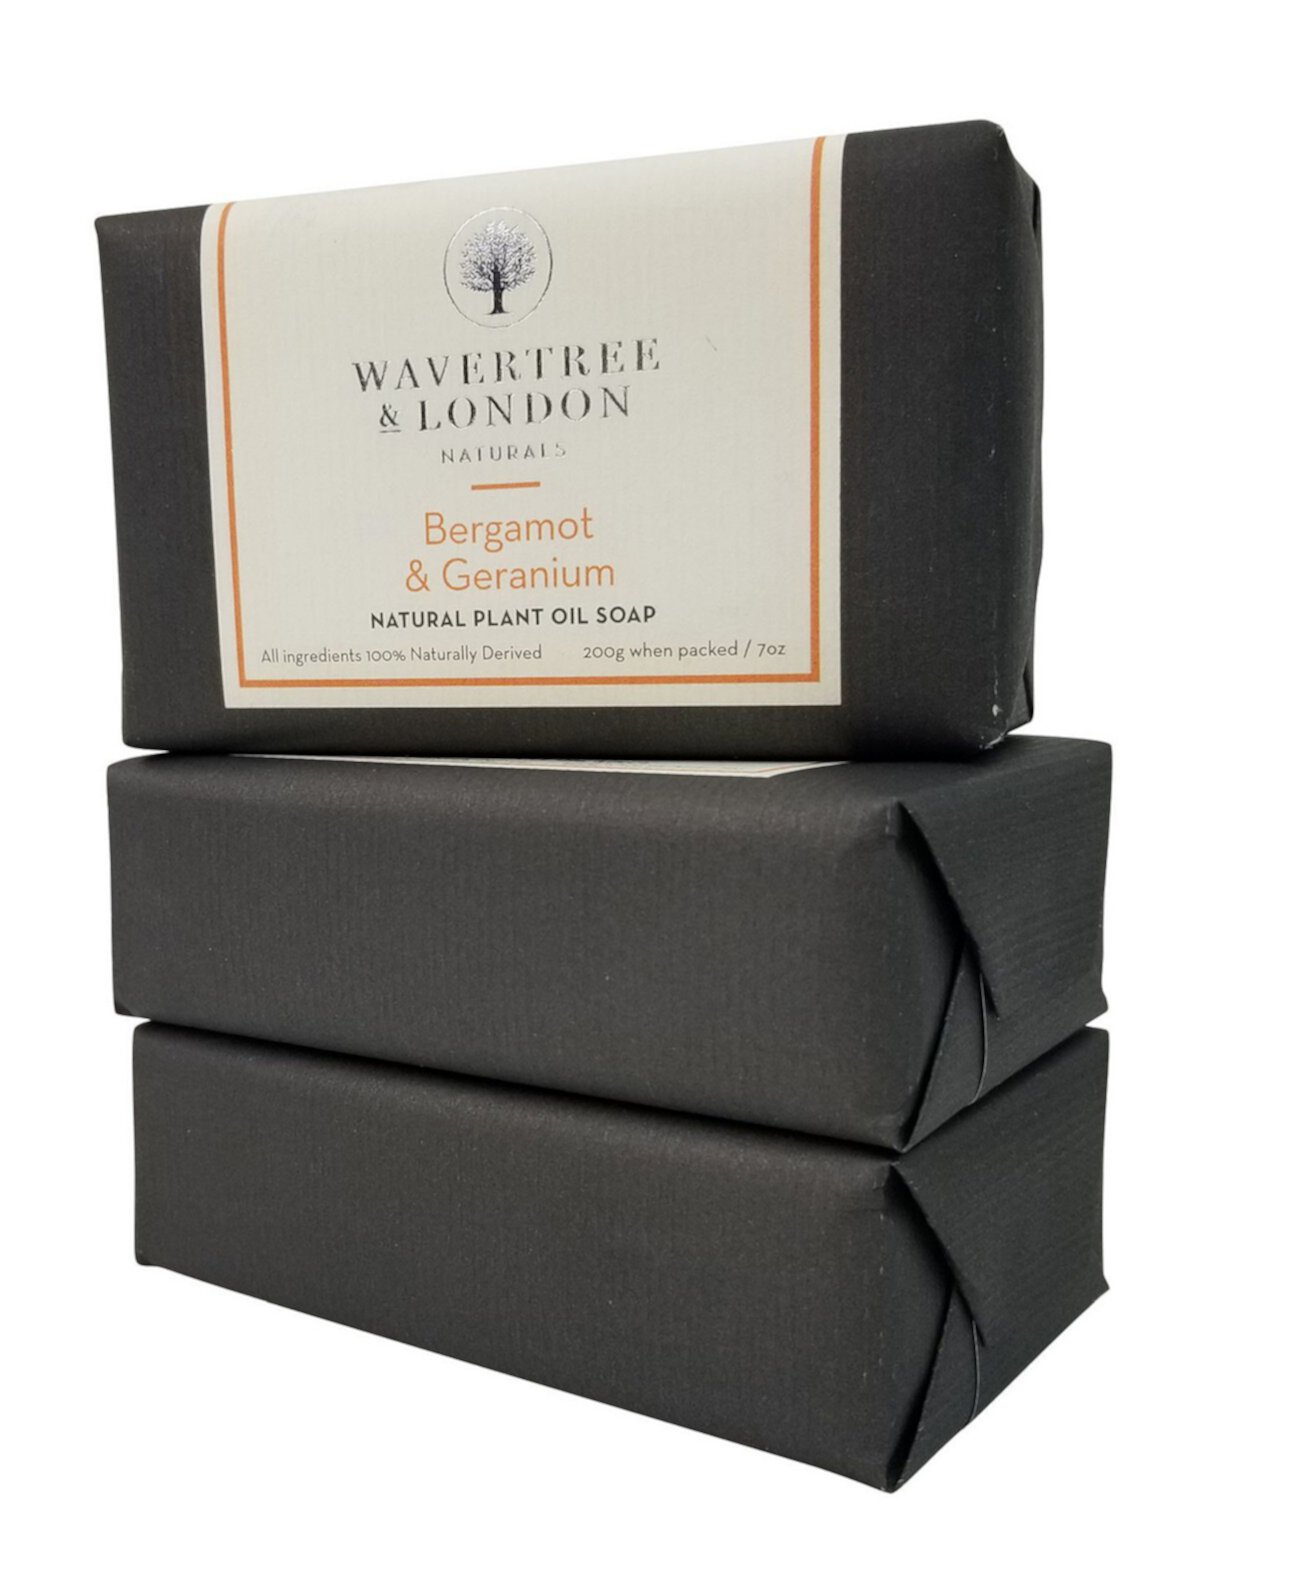 Naturals Бергамот и мыло с герани в упаковке 3 штуки, каждая по 7 унций Wavertree & London